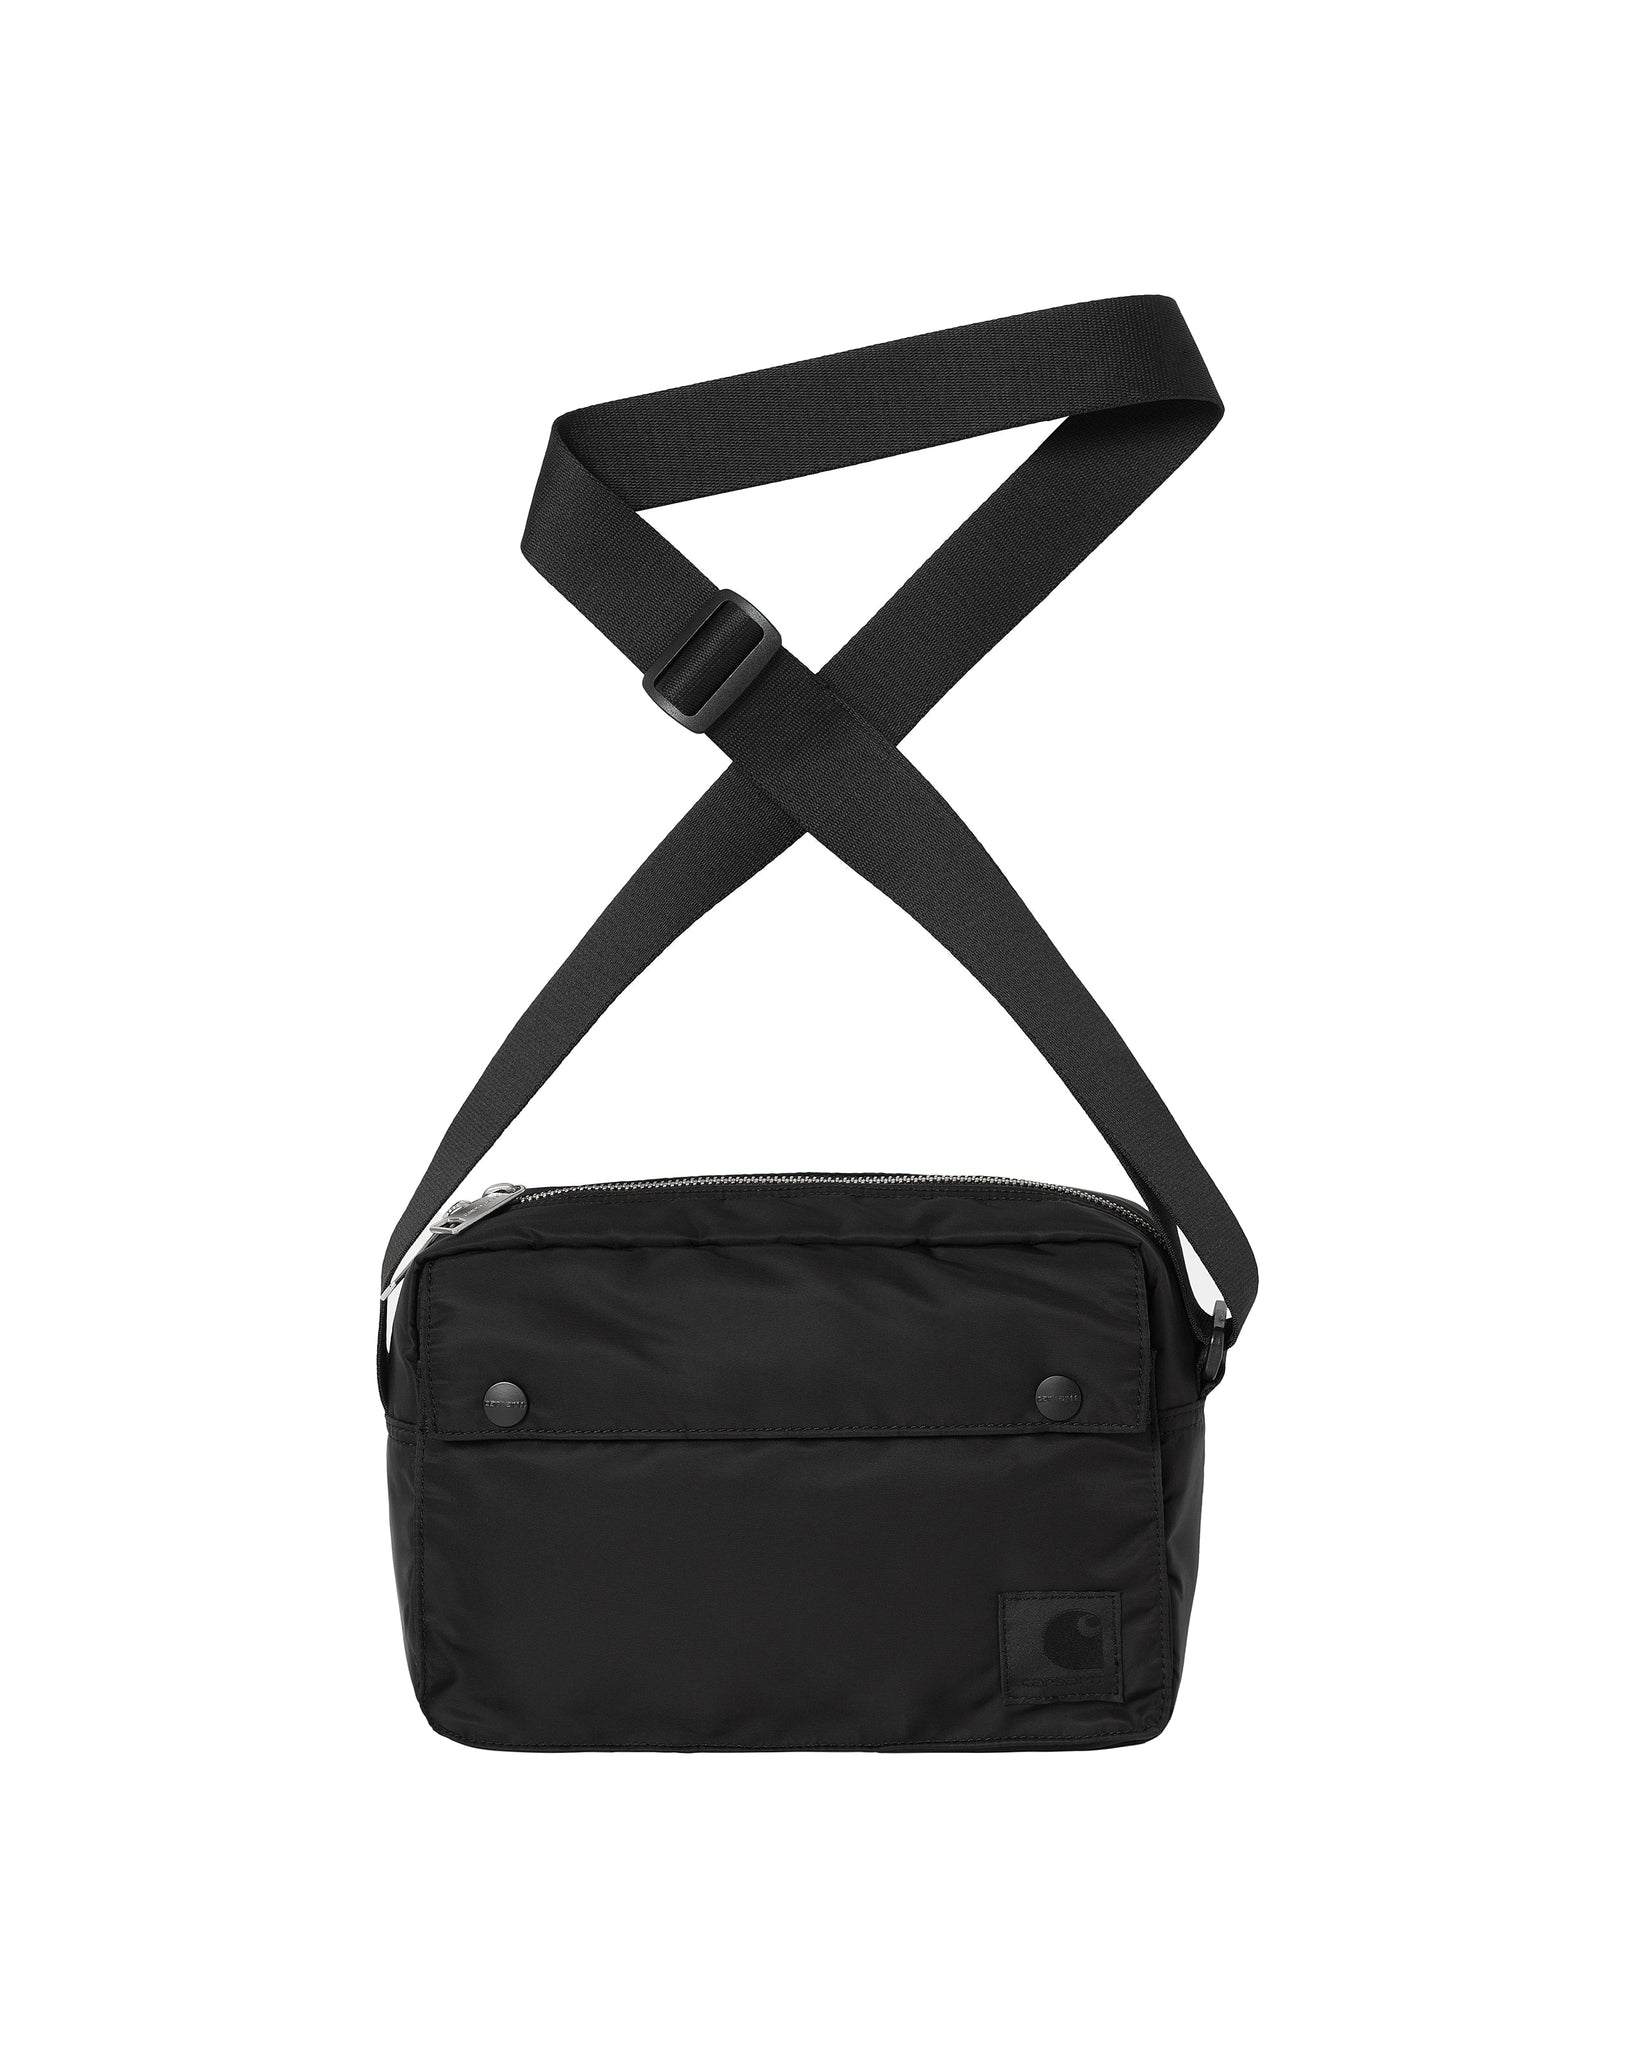 Otley shoulder bag - black